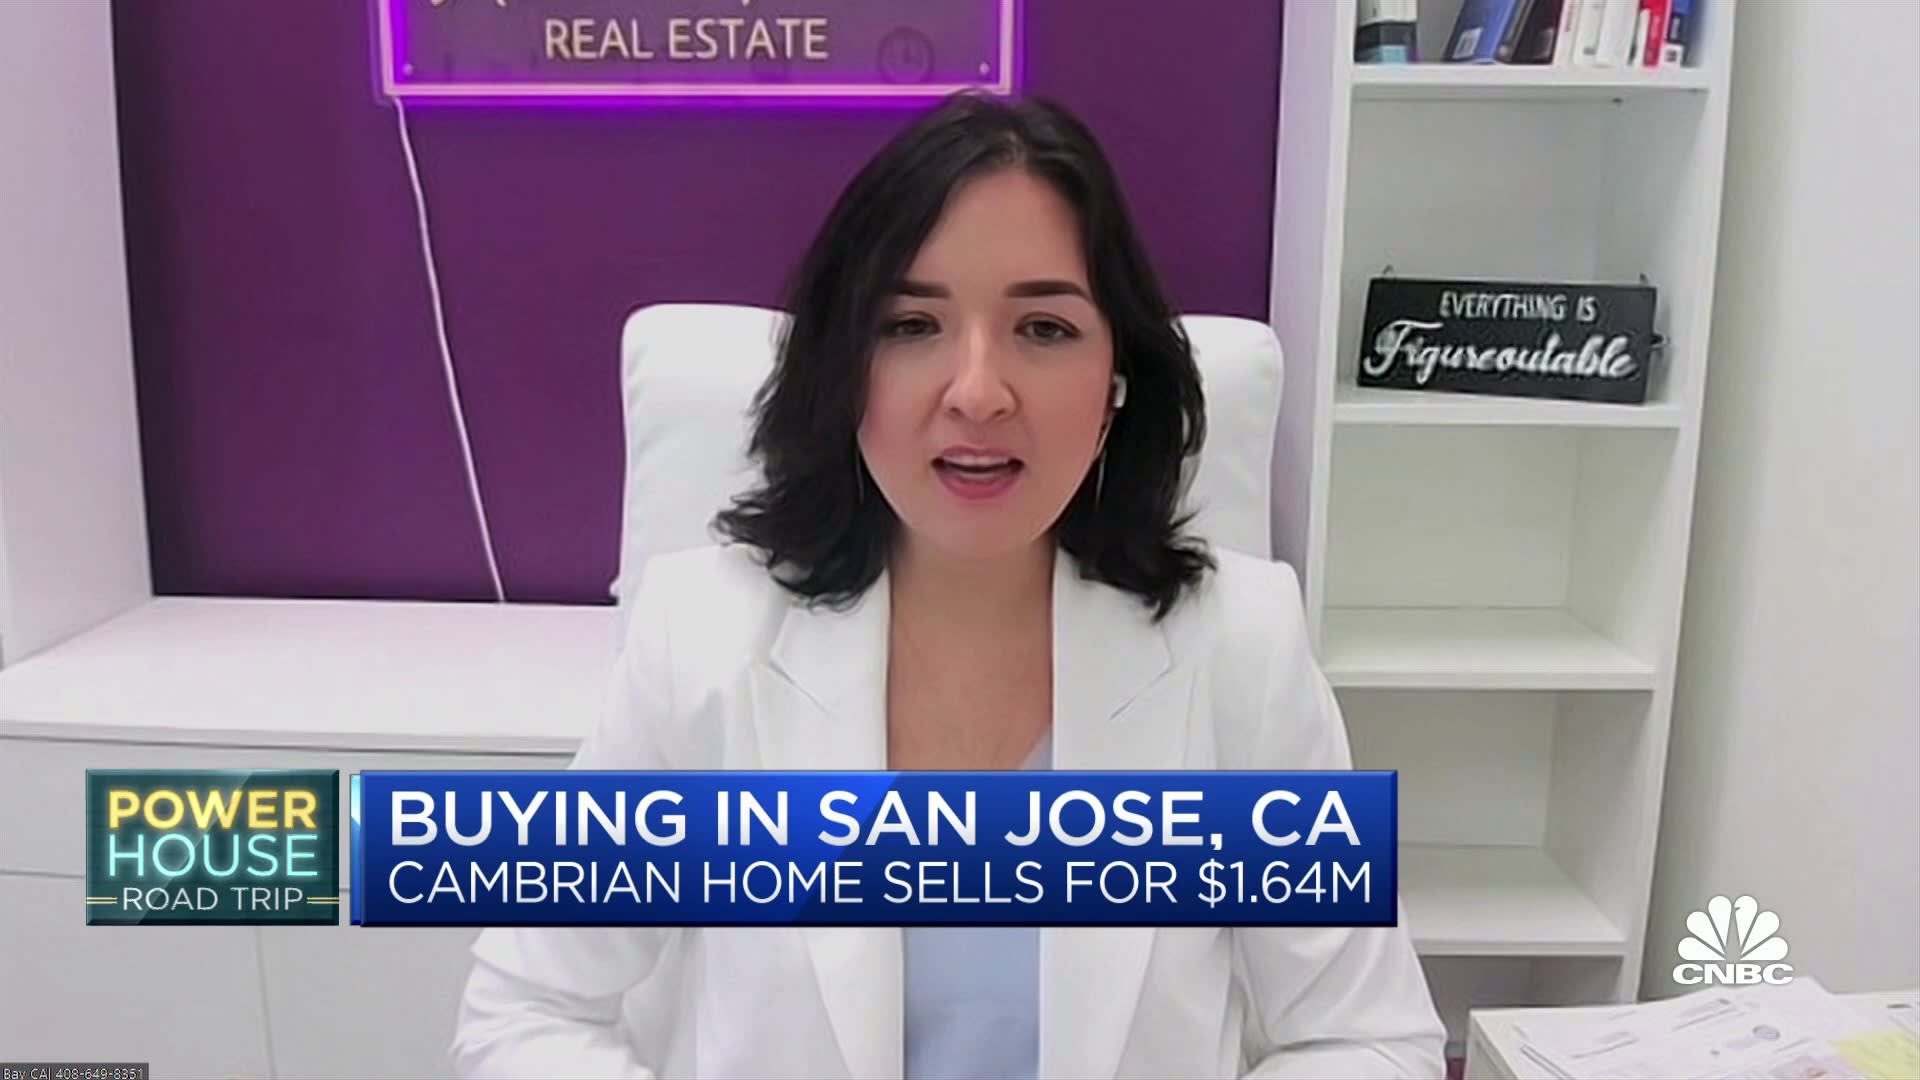 Real estat San Jose adalah pasar penjual yang 'kuat', kata Anna Fine dari Coldwell Banker Realty